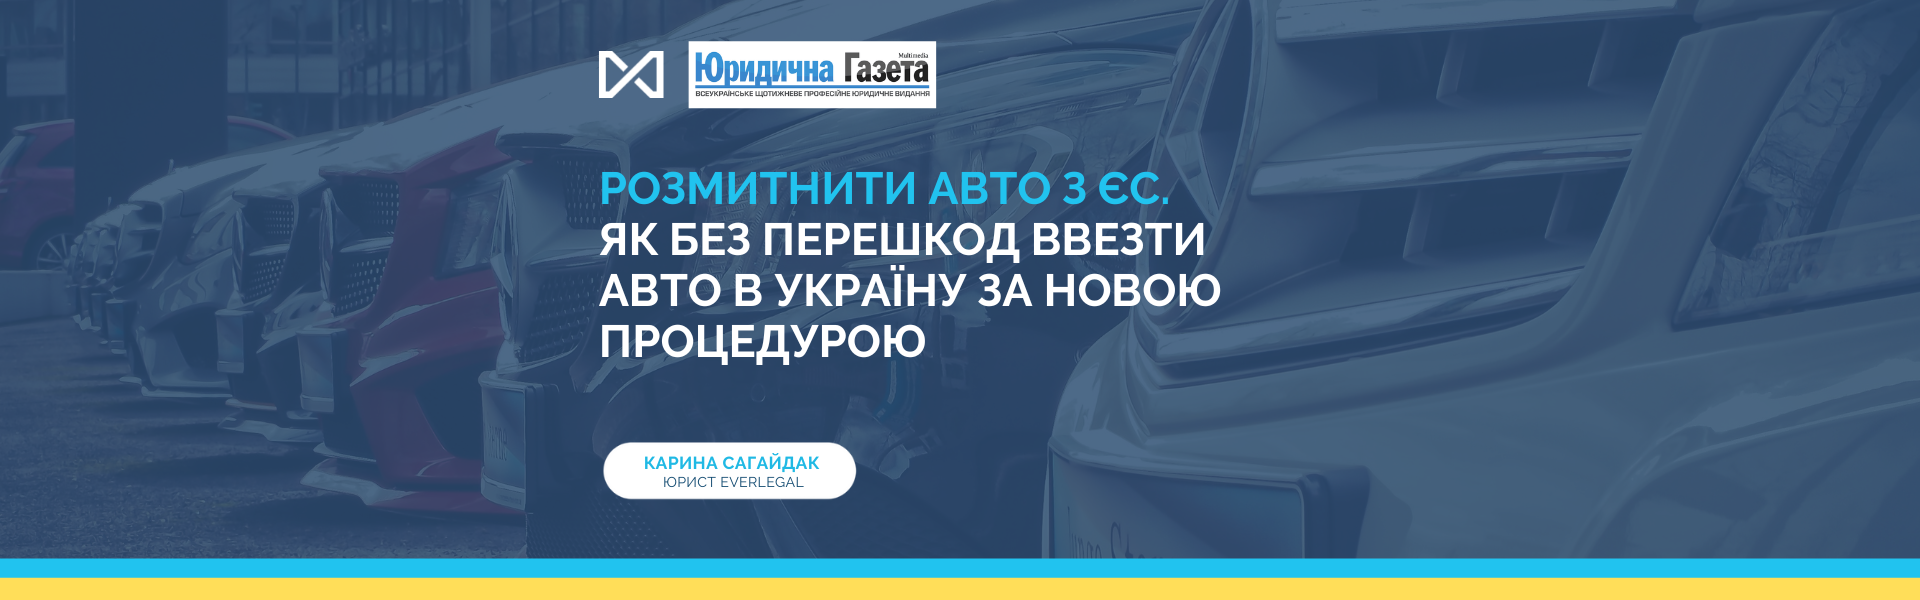 Розмитнити авто з ЄС. Як без перешкод ввезти авто в Україну за новою процедурою